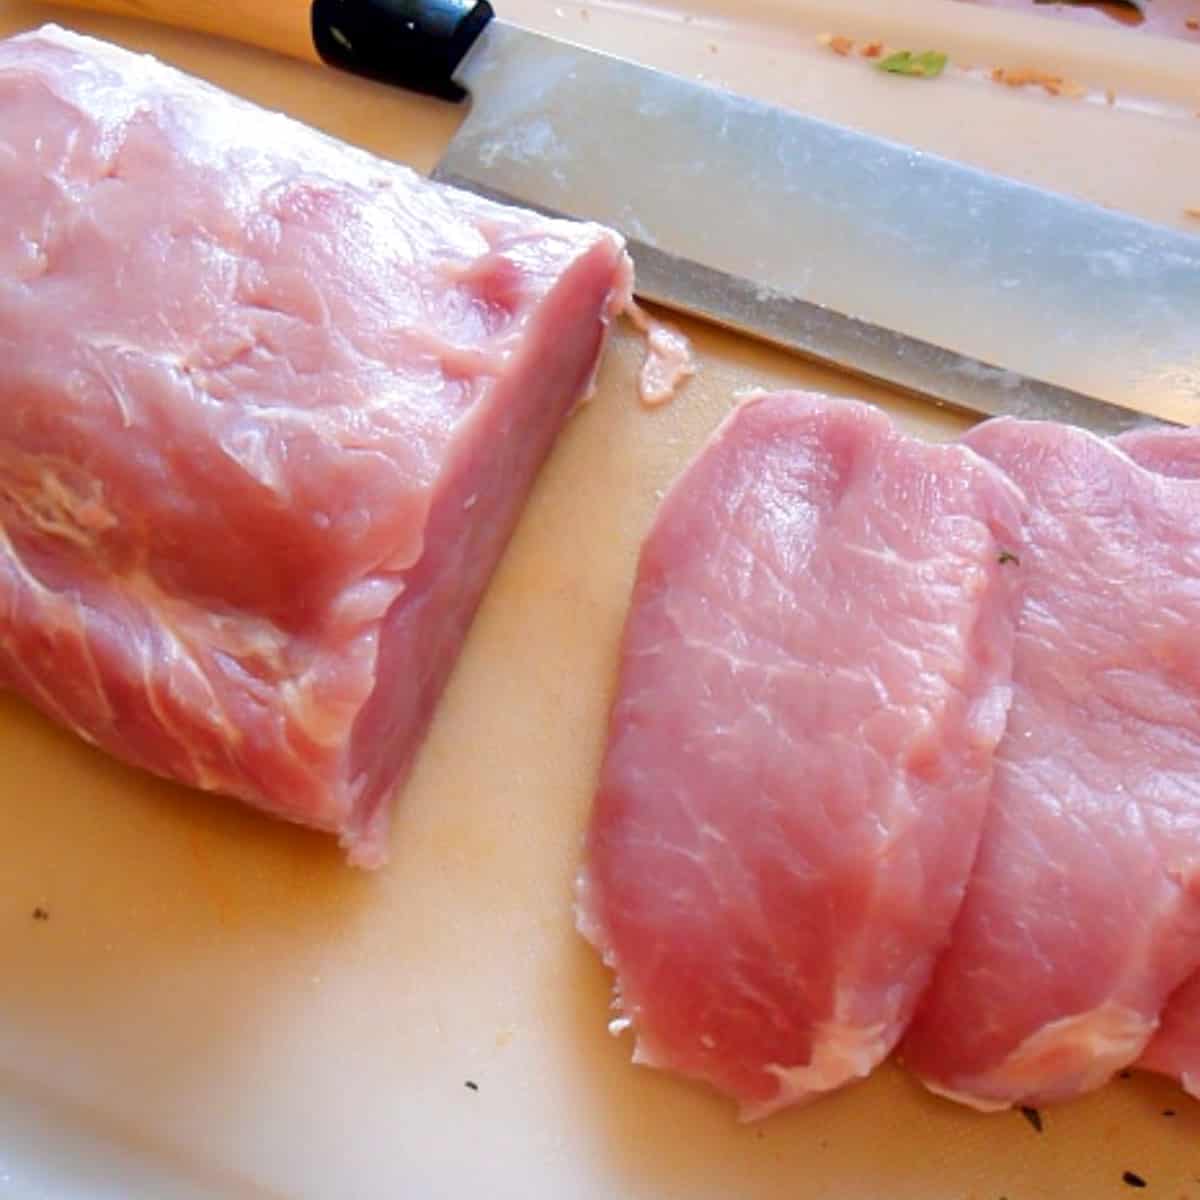 Pork loin roast sliced into cutlets.